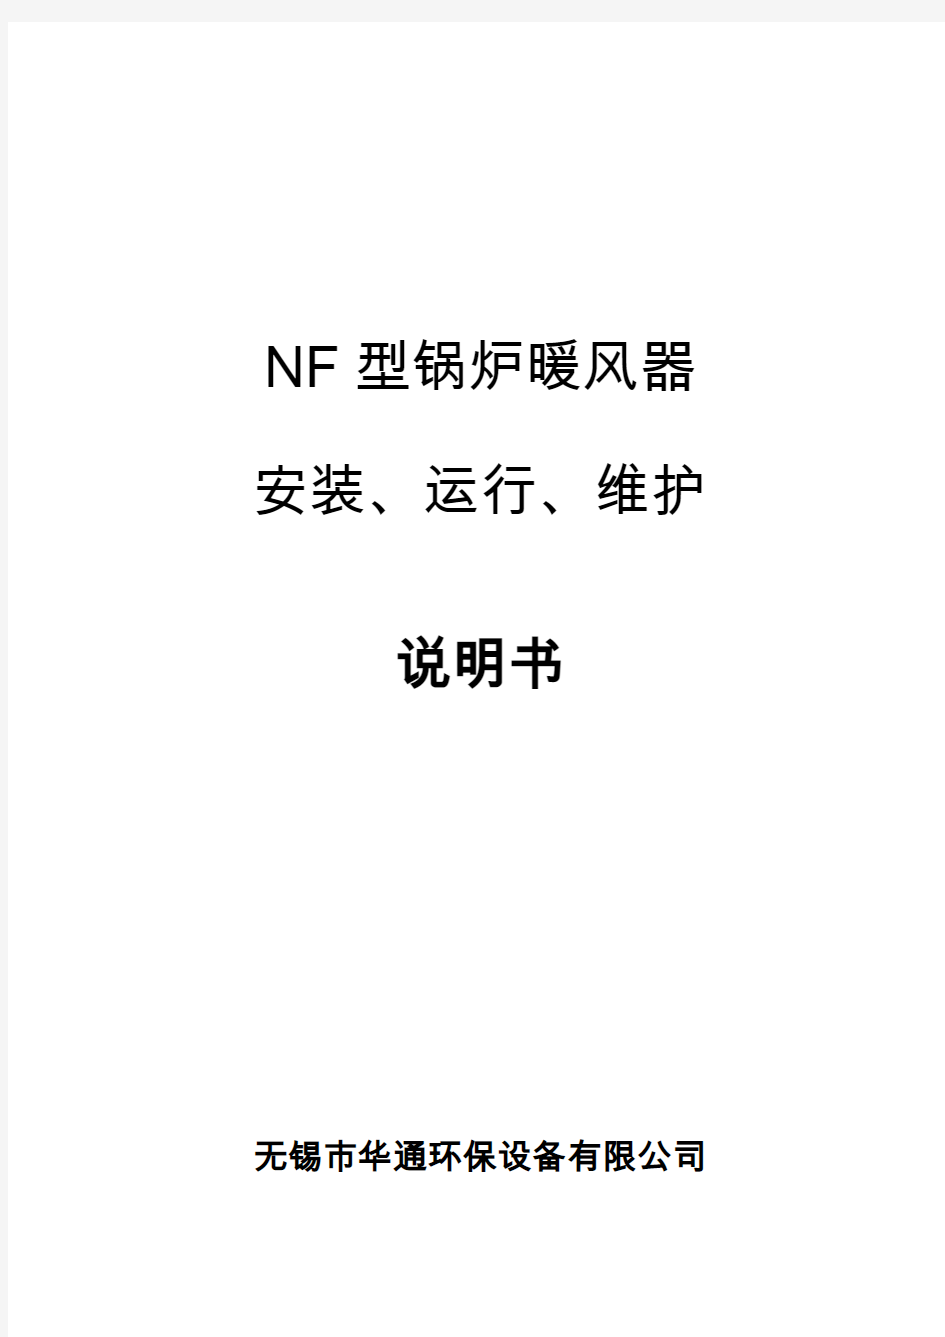 NF型锅炉暖风器说明书